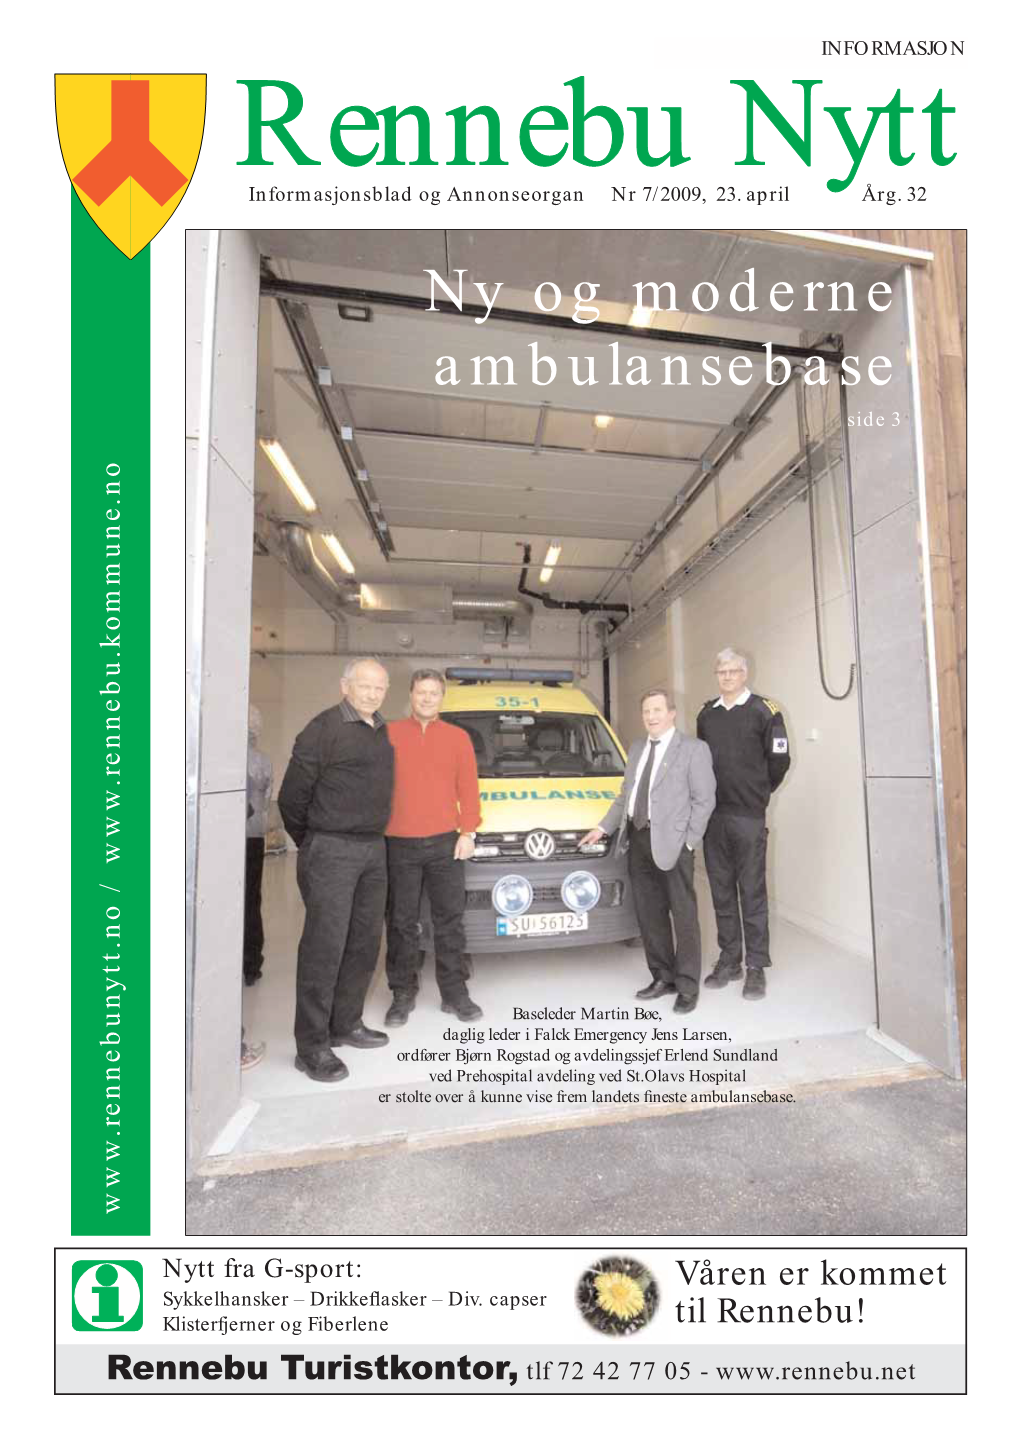 Ny Og Moderne Ambulansebase Side 3